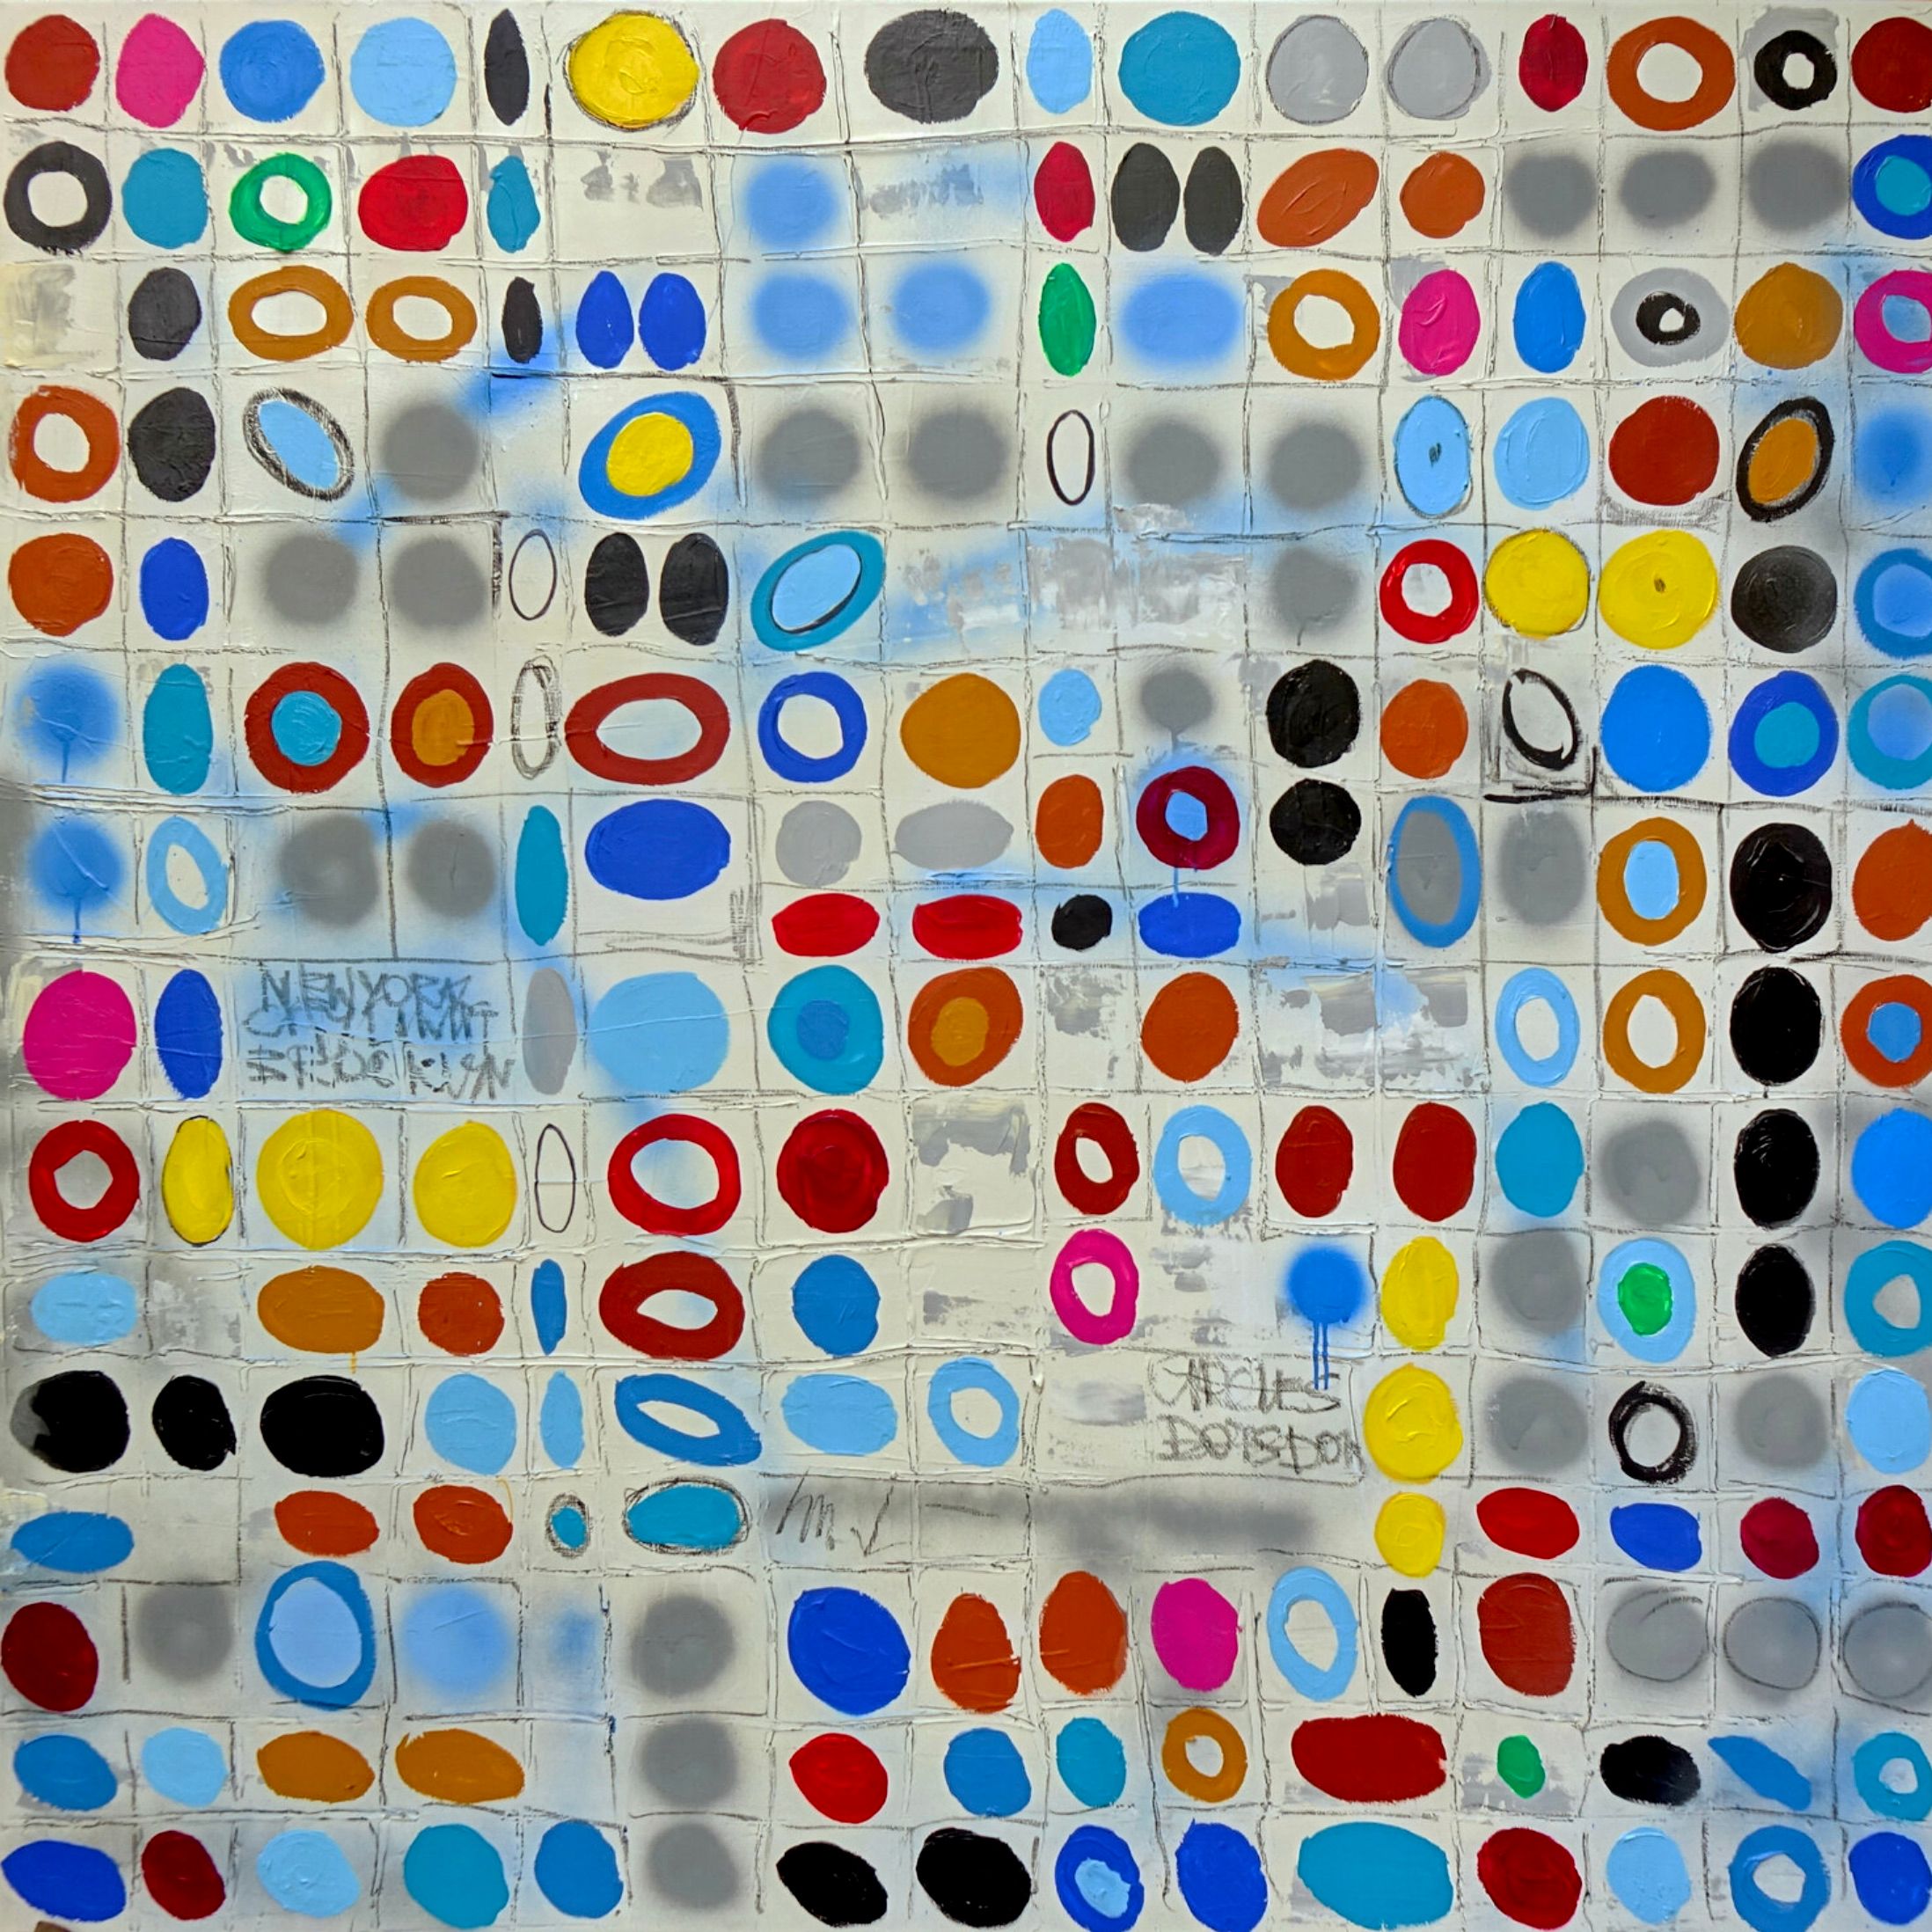 Wojtek Babski, "Circles 2", círculos y puntos, pintura pop art de gran formato sobre lienzo